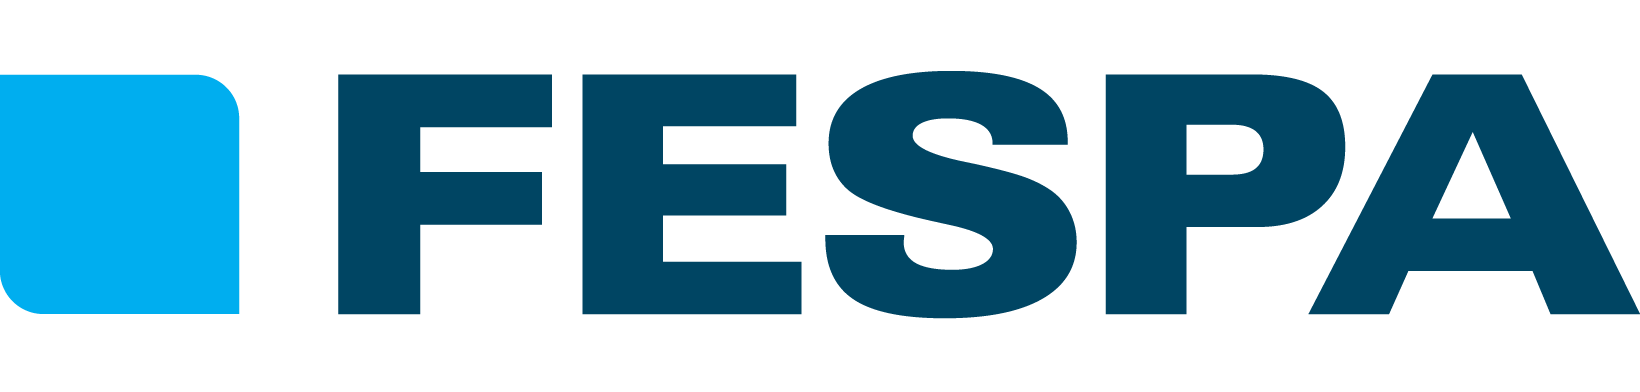 FESPA-Logo.png